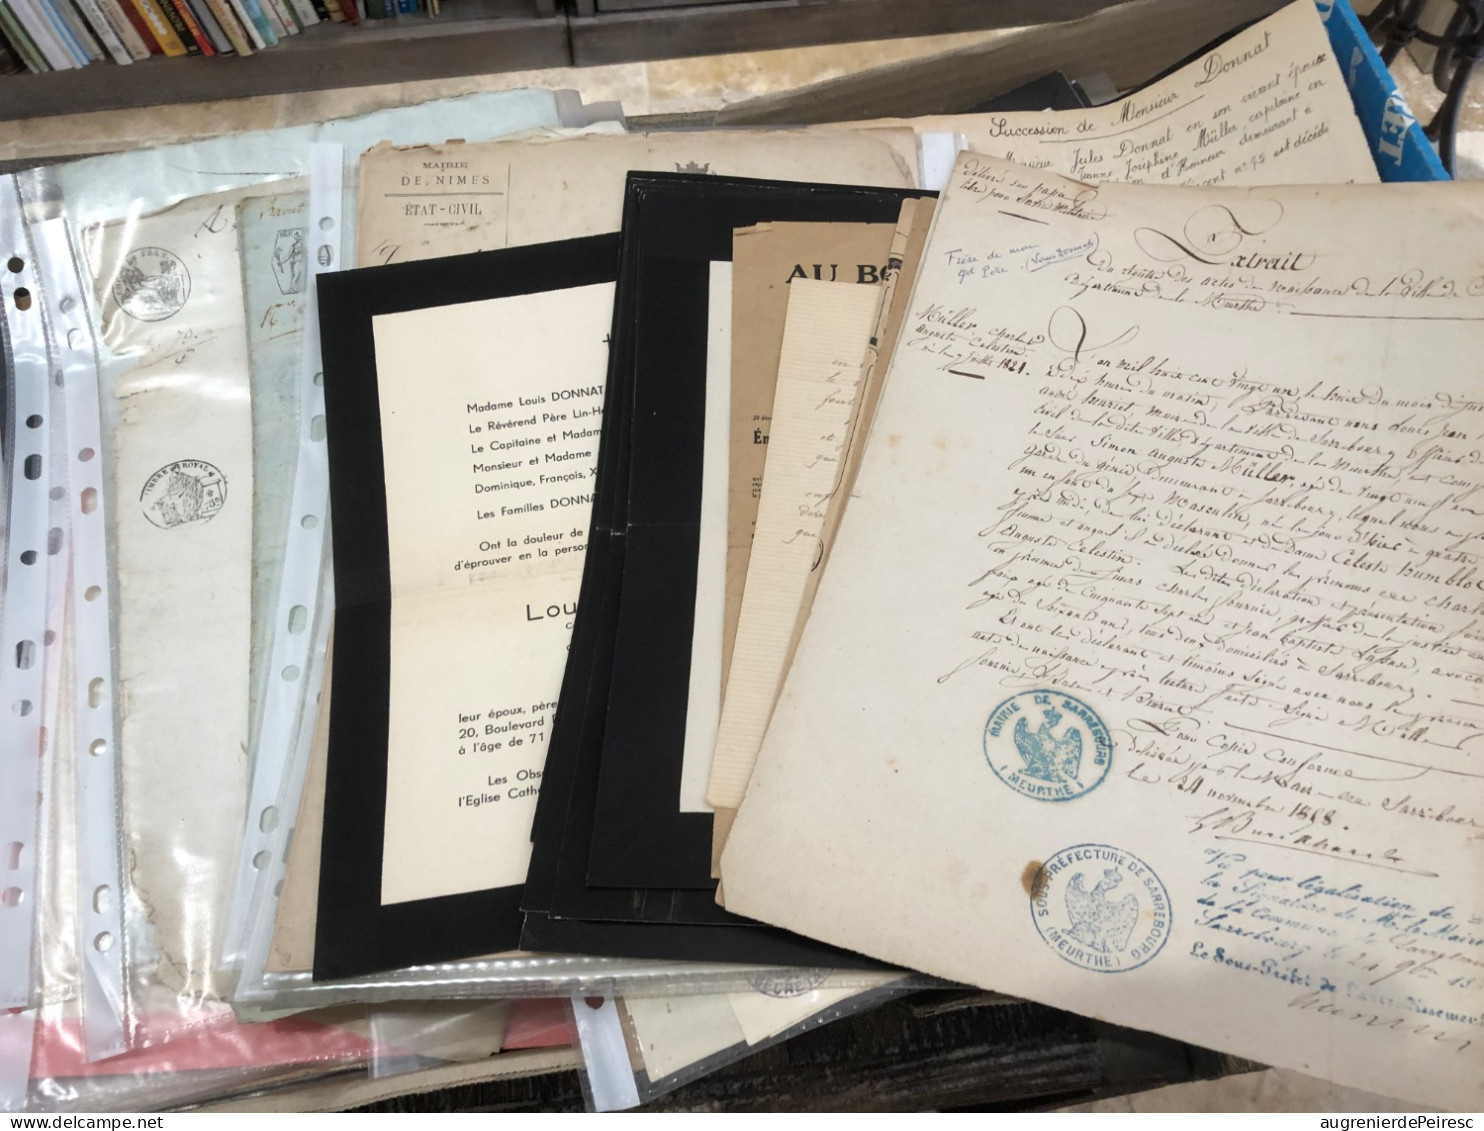 Lot De 55 Documents Famille DONNAT -Muller-Seguelat-Huart 1795-1940 Bas Rhin- Ariège - Pas De Calais - Historical Documents